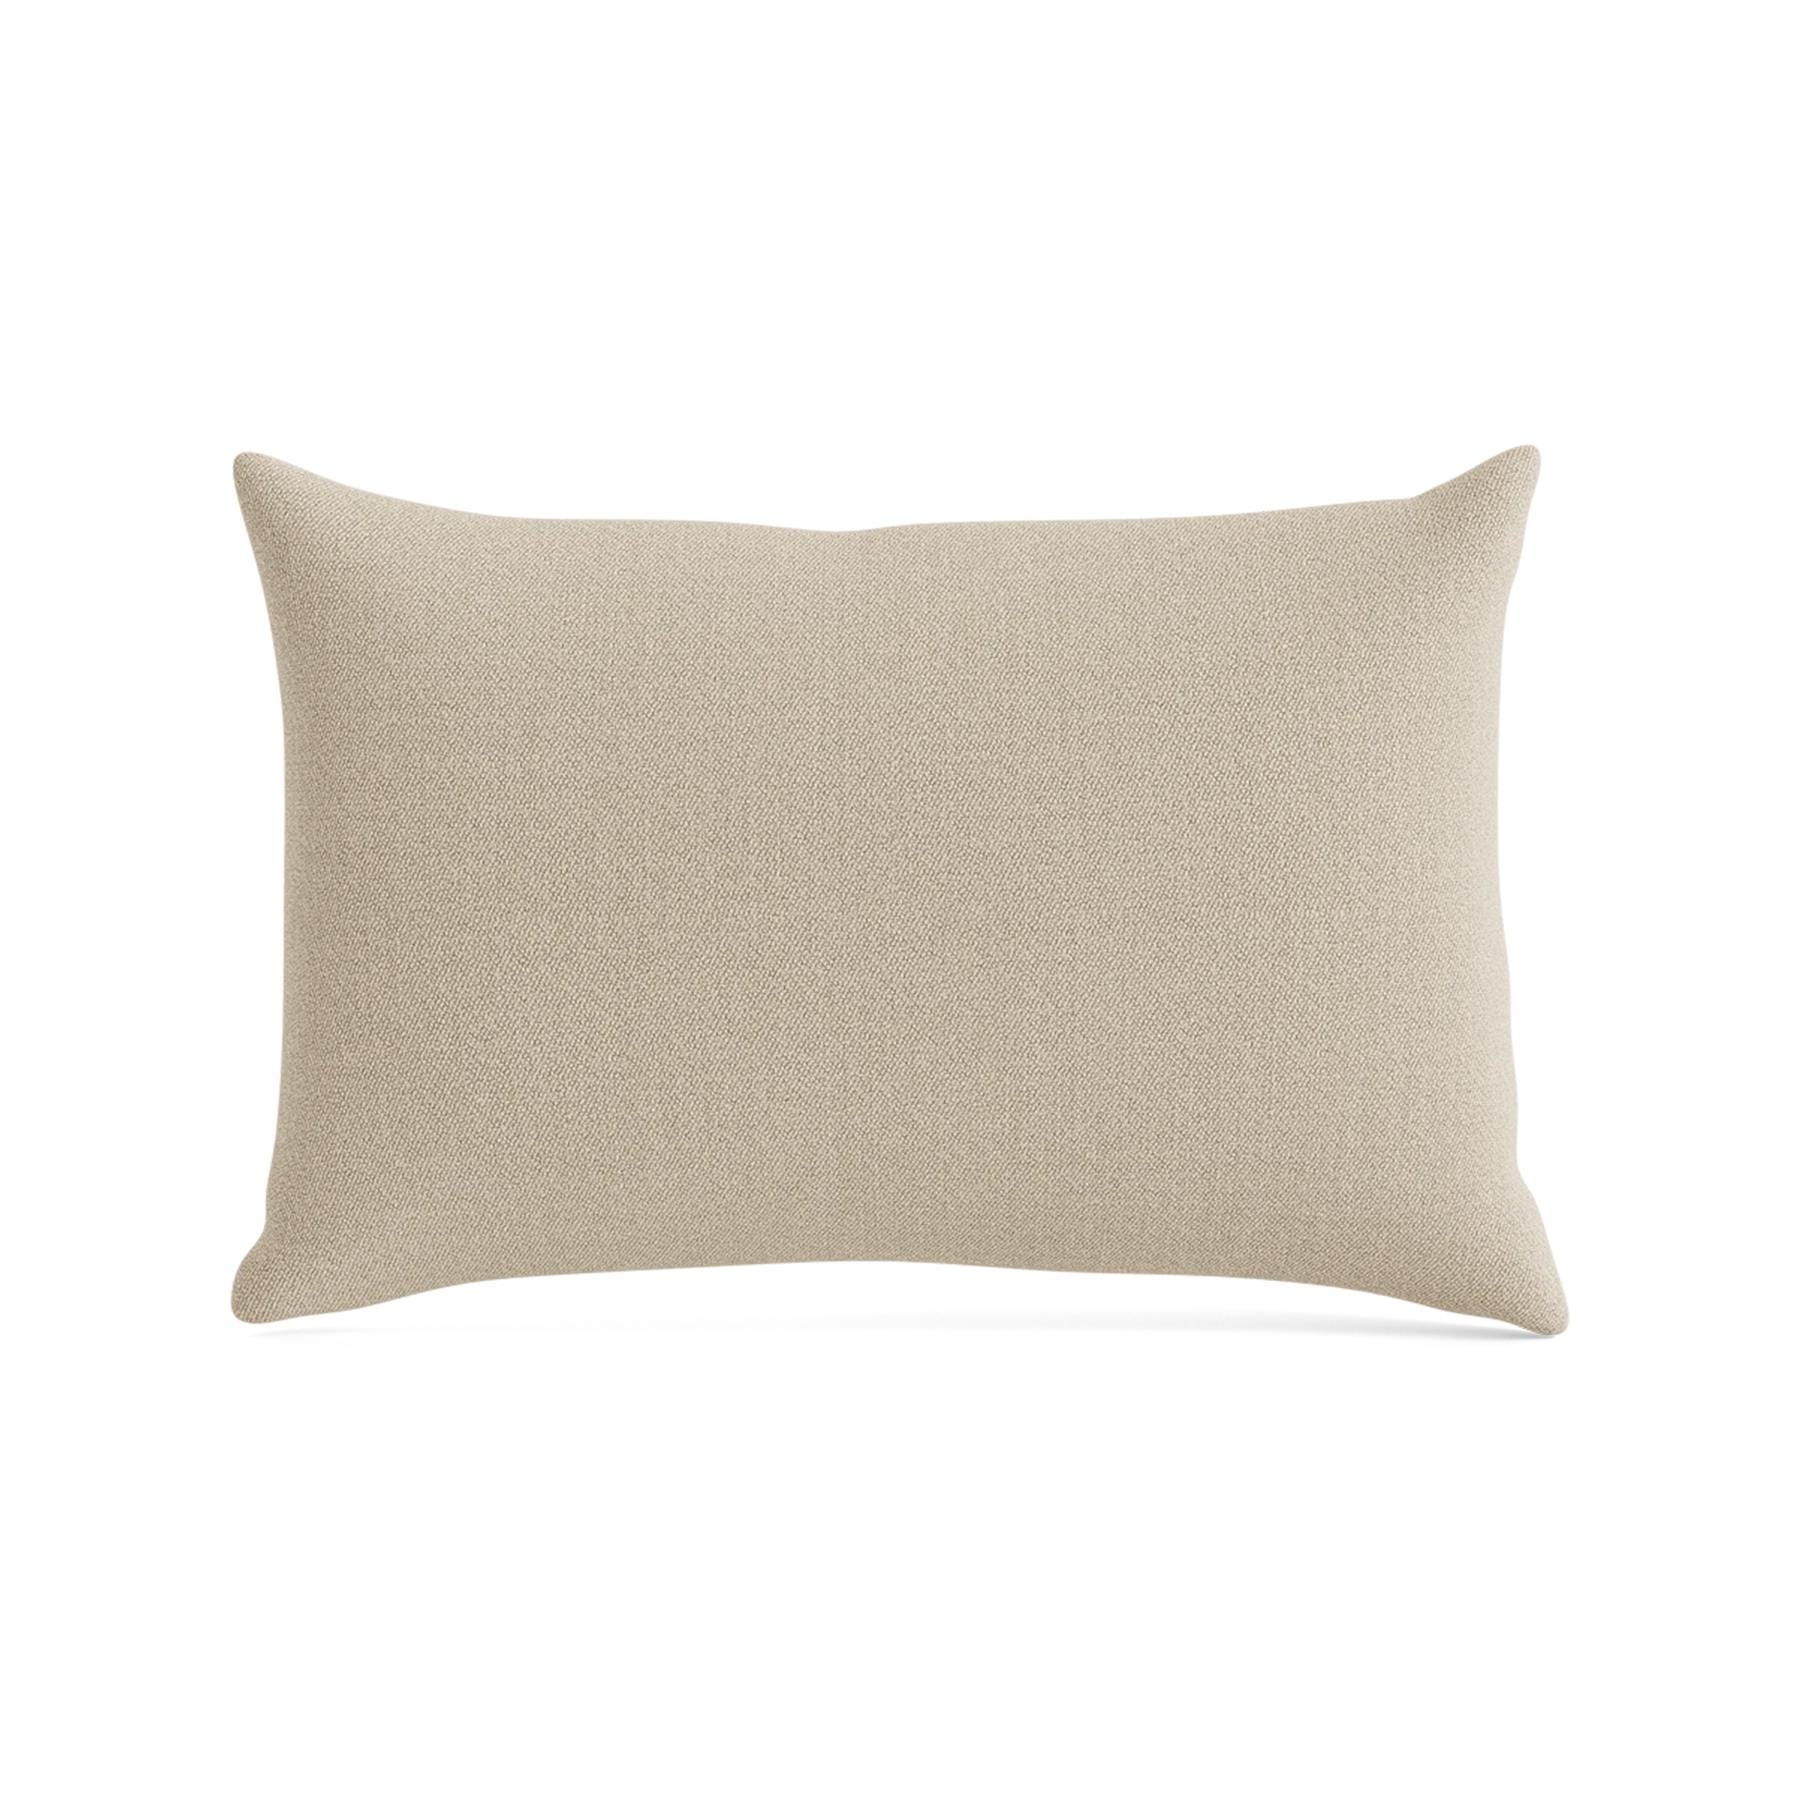 Make Nordic Pillow 40cmx60cm Vidar 222 Down And Fibers Brown